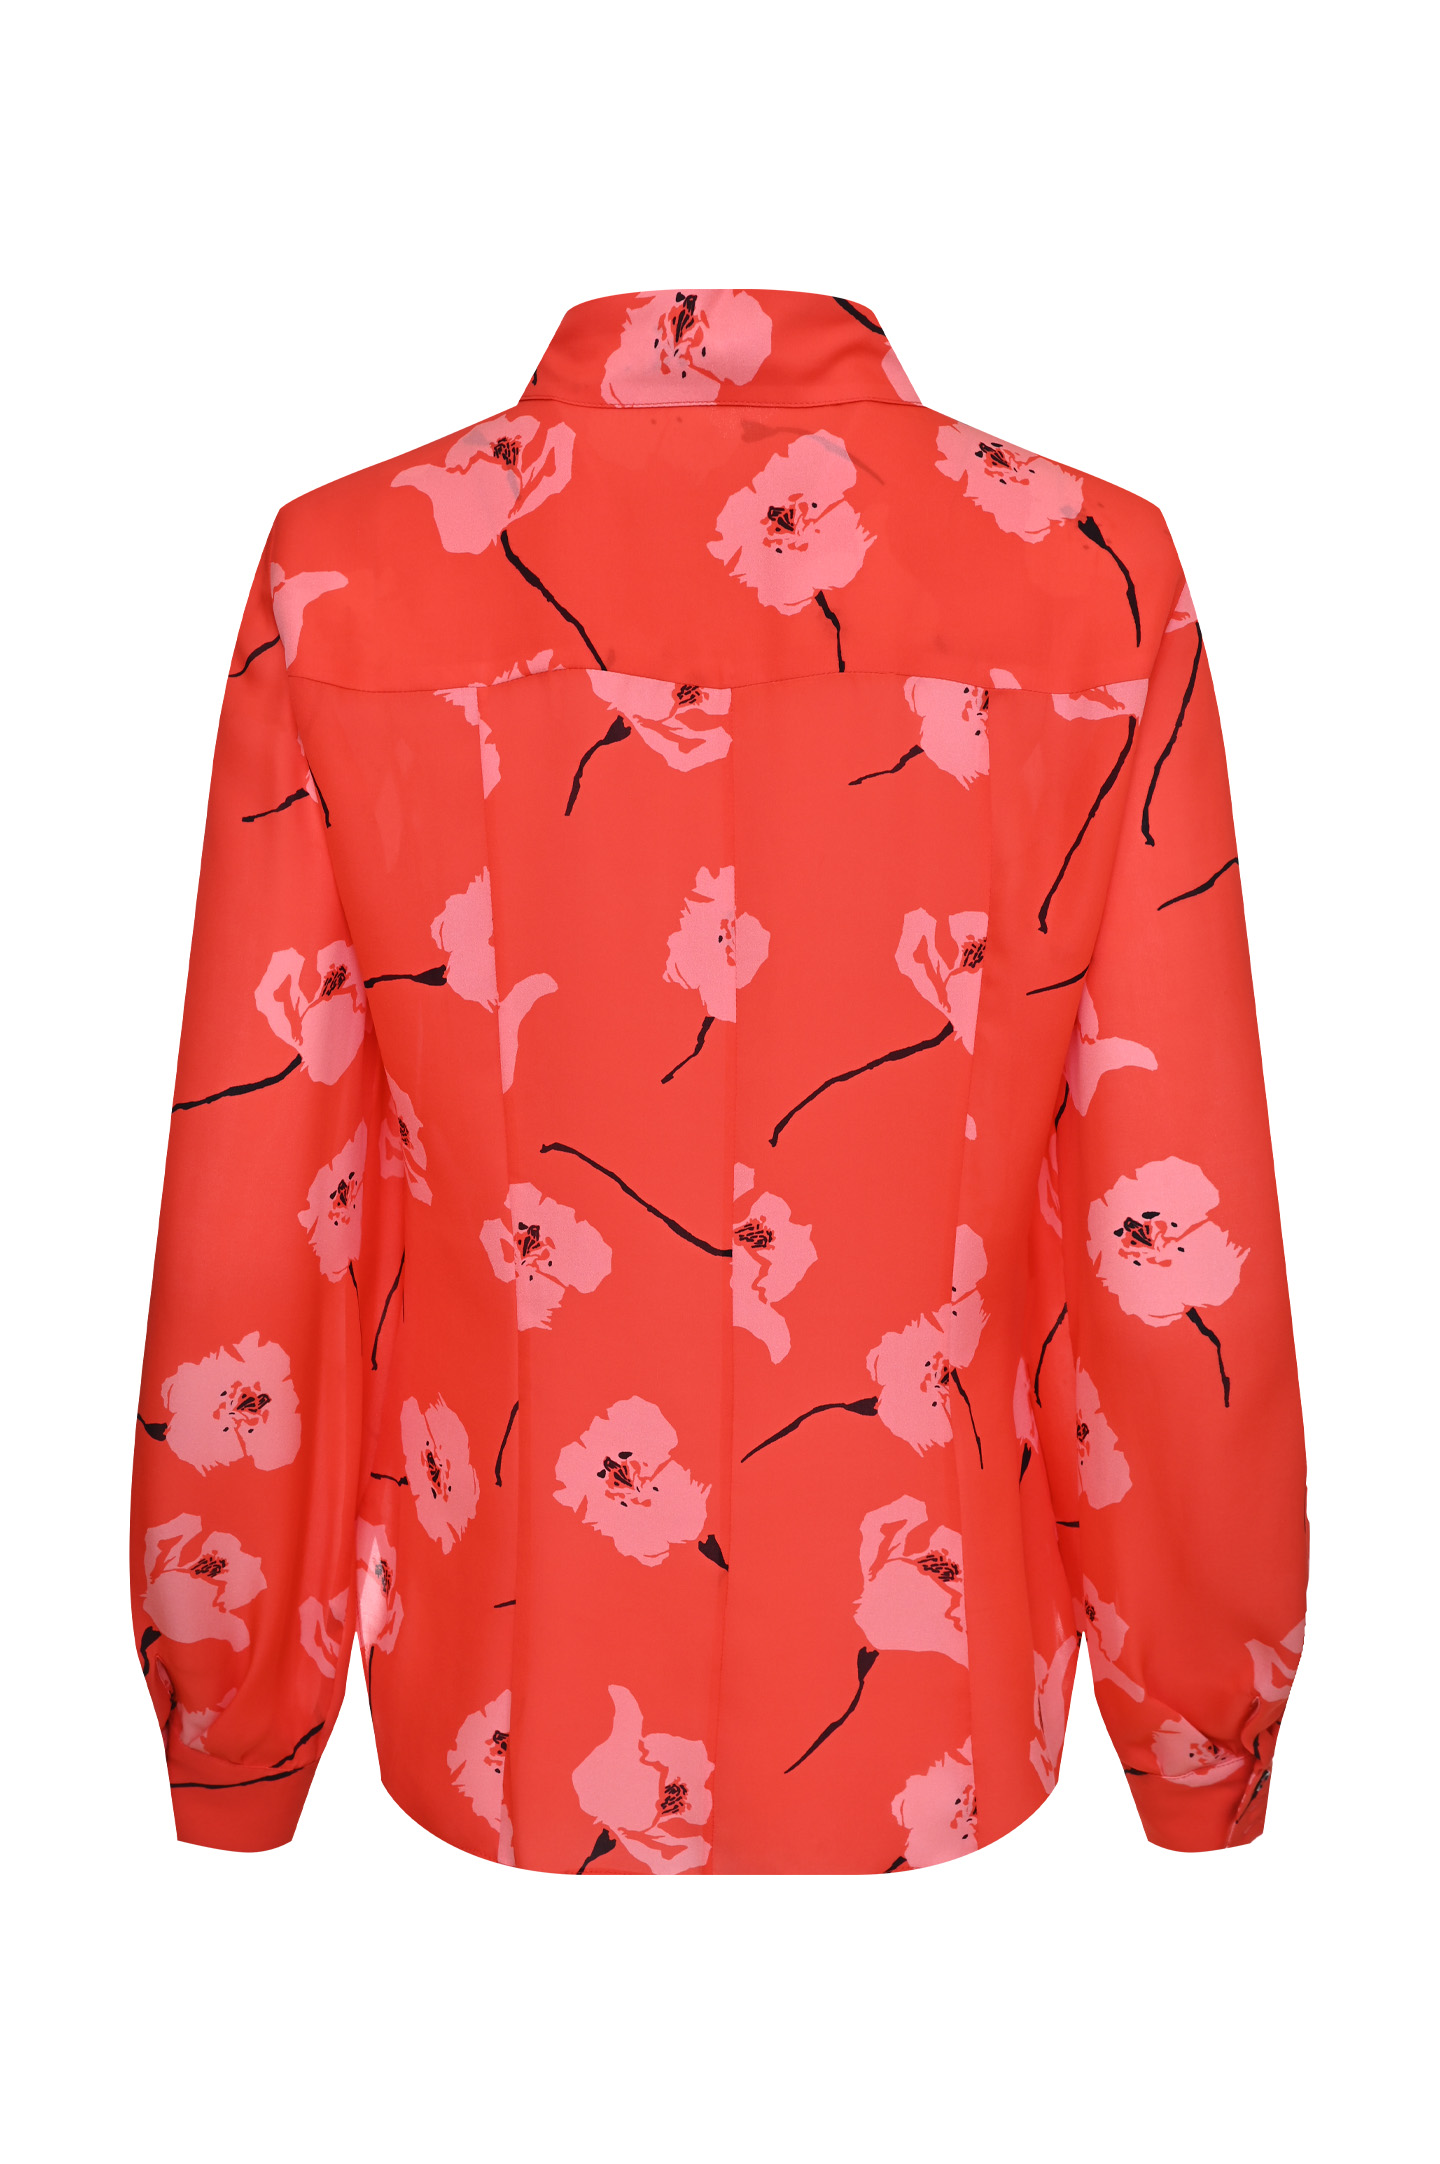 Блуза CAROLINA HERRERA R2111N214, цвет: Красный, Женский